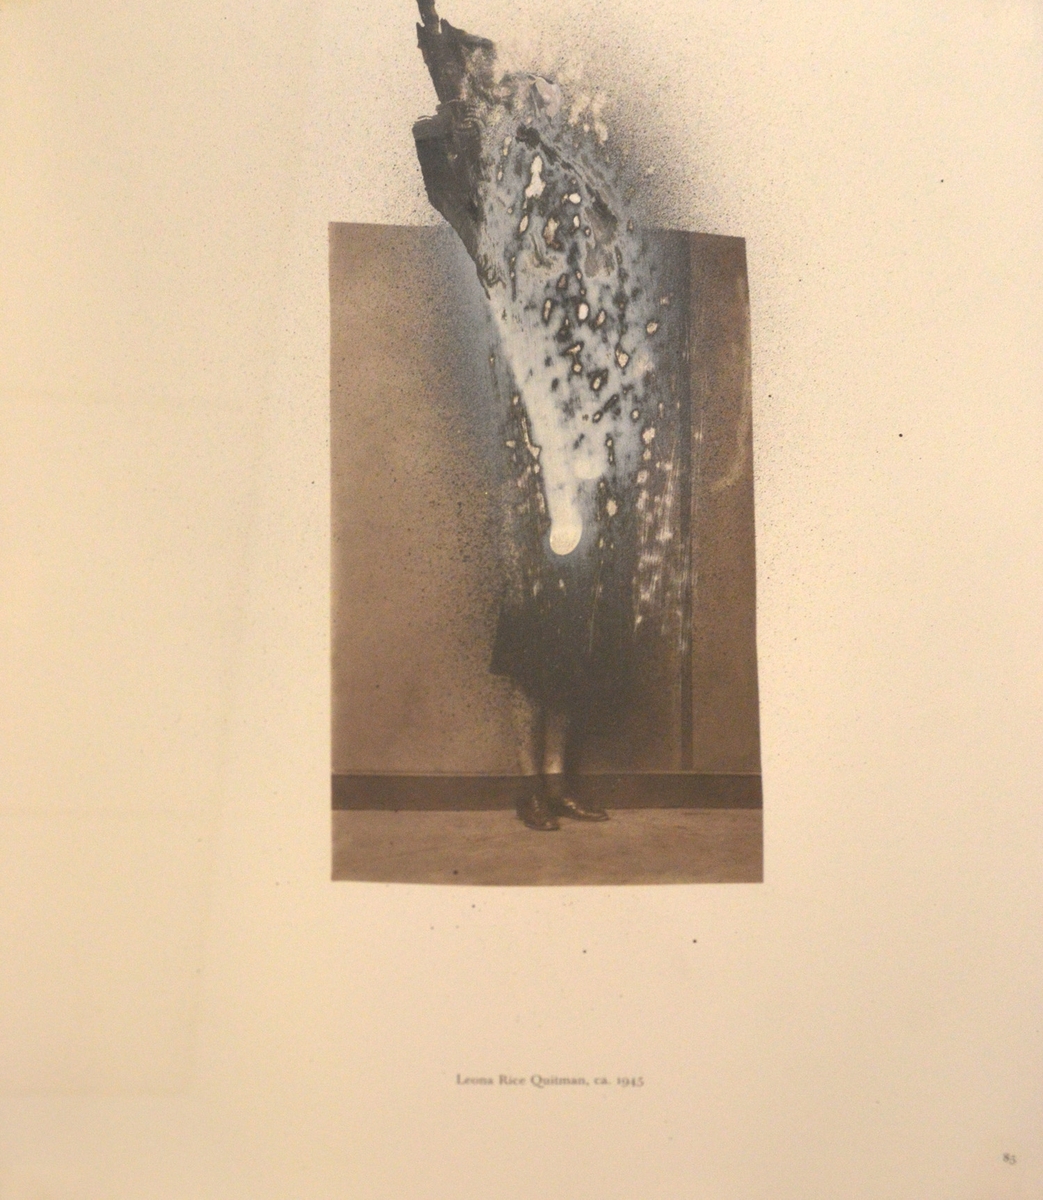 Ett bearbetat äldre fotografi där delar av en kvinna skymtar. Under står Leona Rice Quitman, ca 1945.